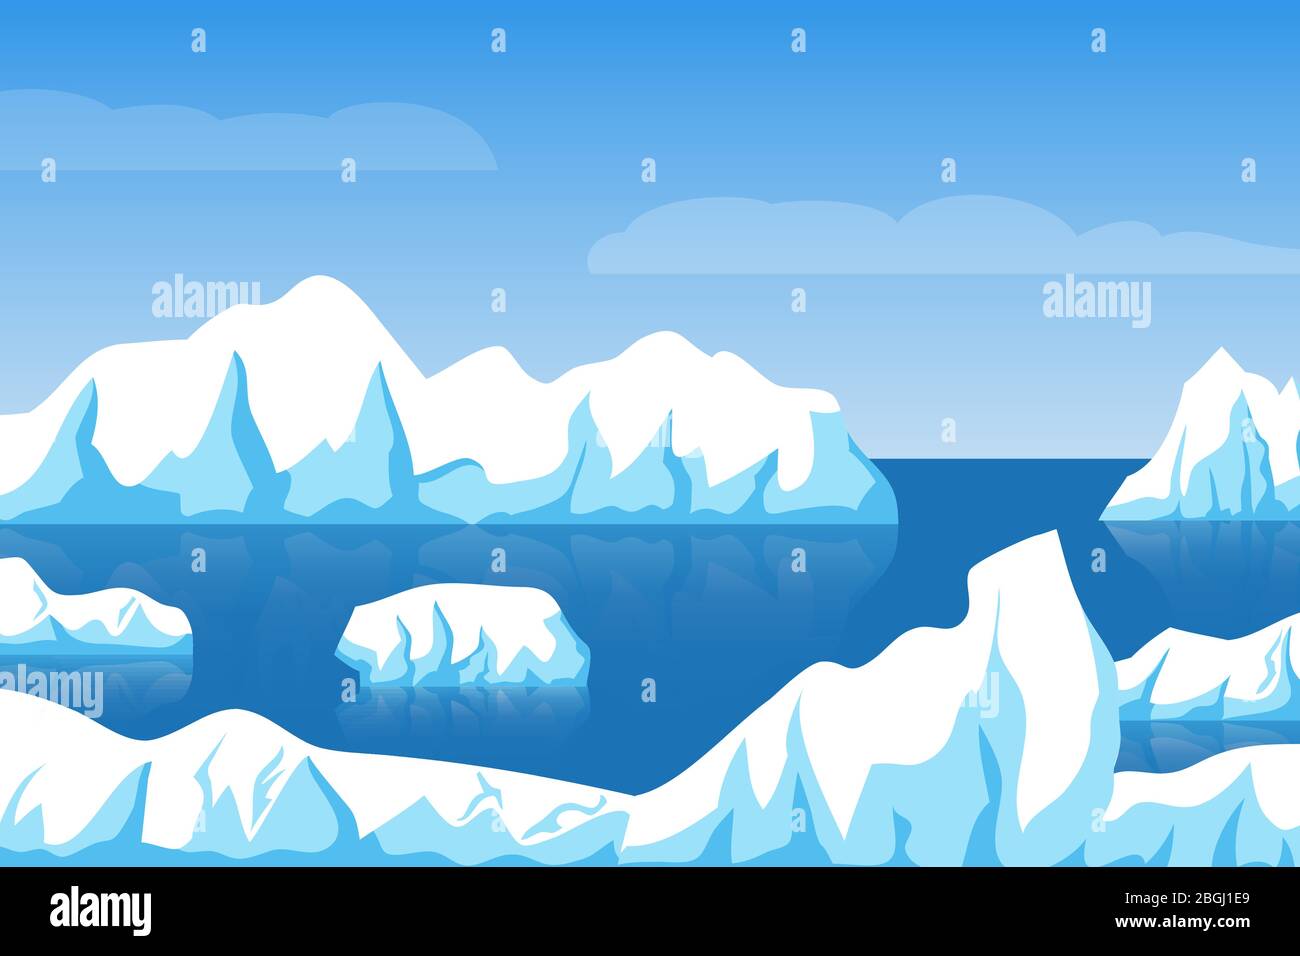 Cartoon inverno polare artico o antartico ghiaccio paesaggio con iceberg in mare vettore illustrazione. Ice berg in oceano, illustrazione artica del ghiacciaio Illustrazione Vettoriale